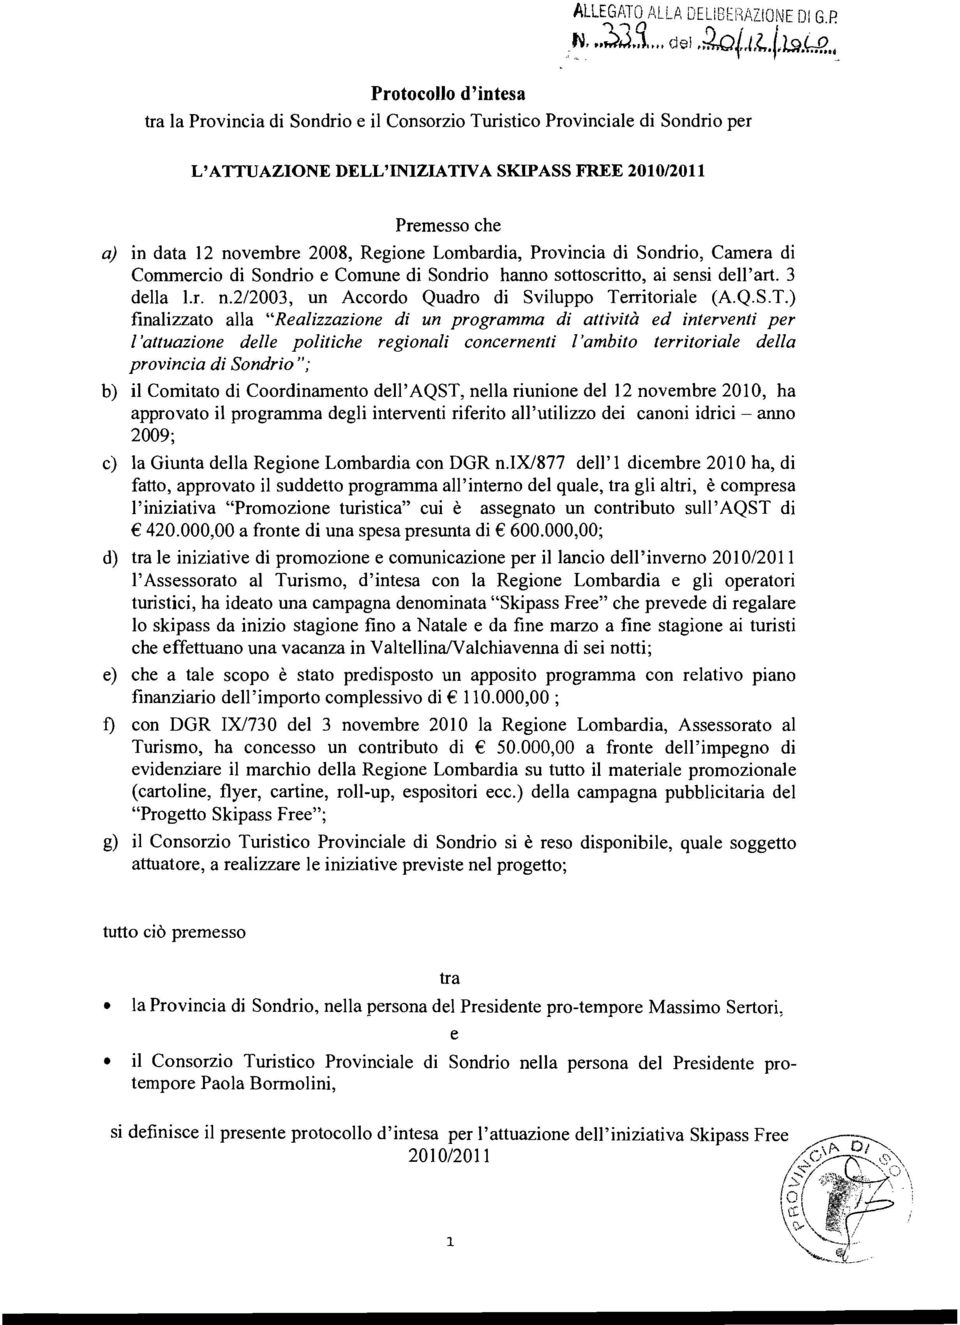 Regione Lombardia, Provincia di Sondrio, Camera di Commercio di Sondrio e Comune di Sondrio hanno sottoscritto, ai sensi dell'art. 3 della l.r. n.2/2003, un Accordo Quadro di Sviluppo Territoriale (A.